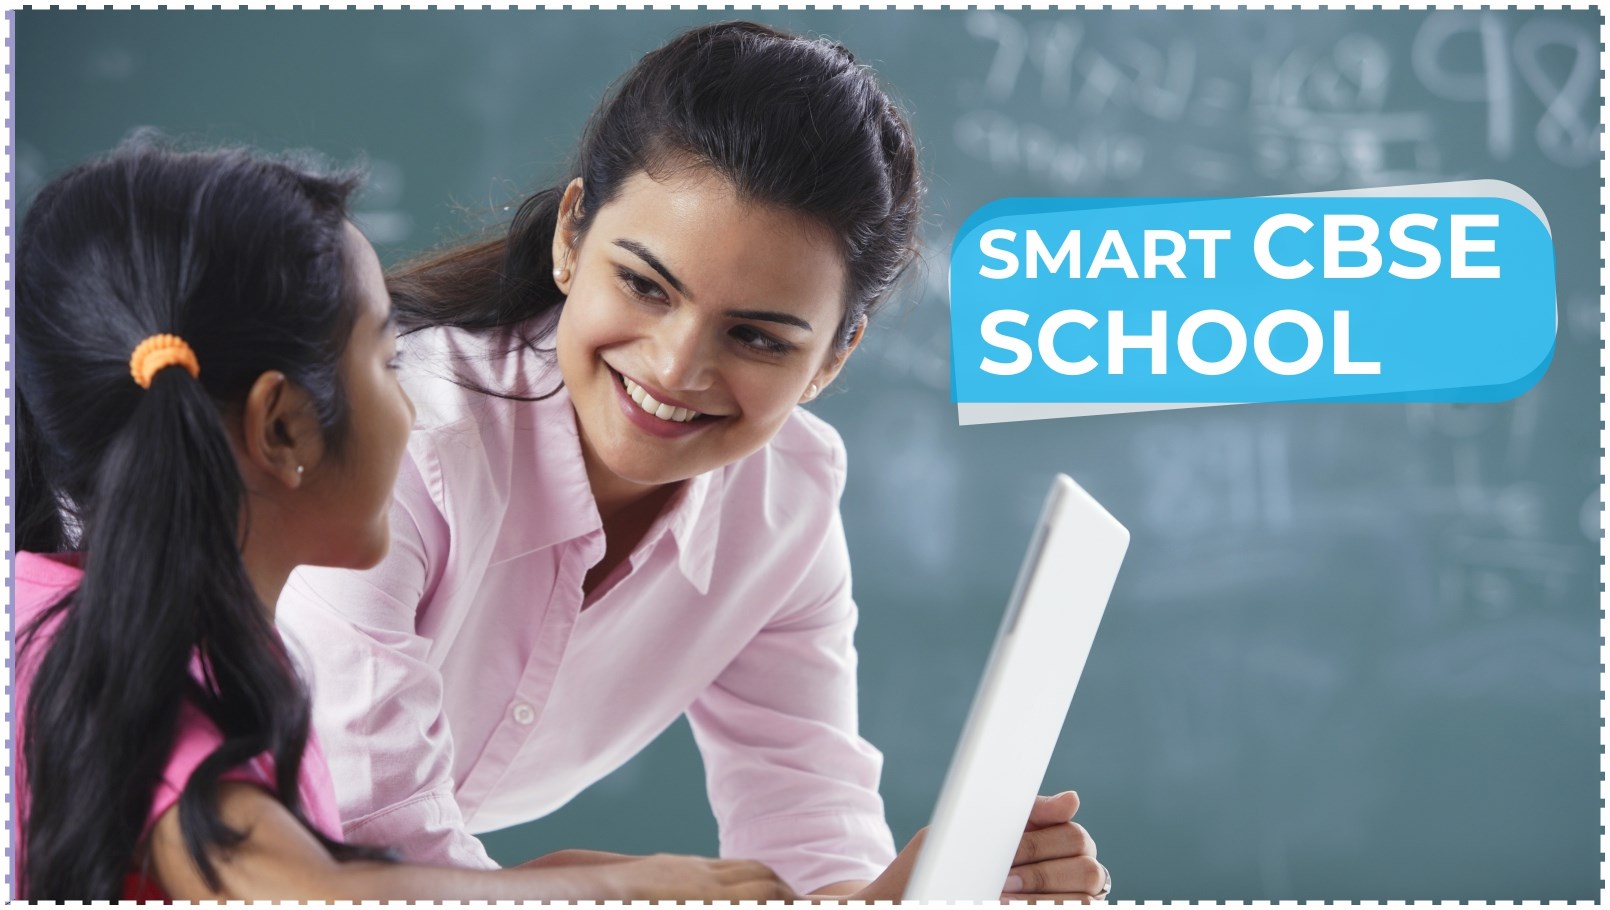 Smart CBSE School in Hyderabad